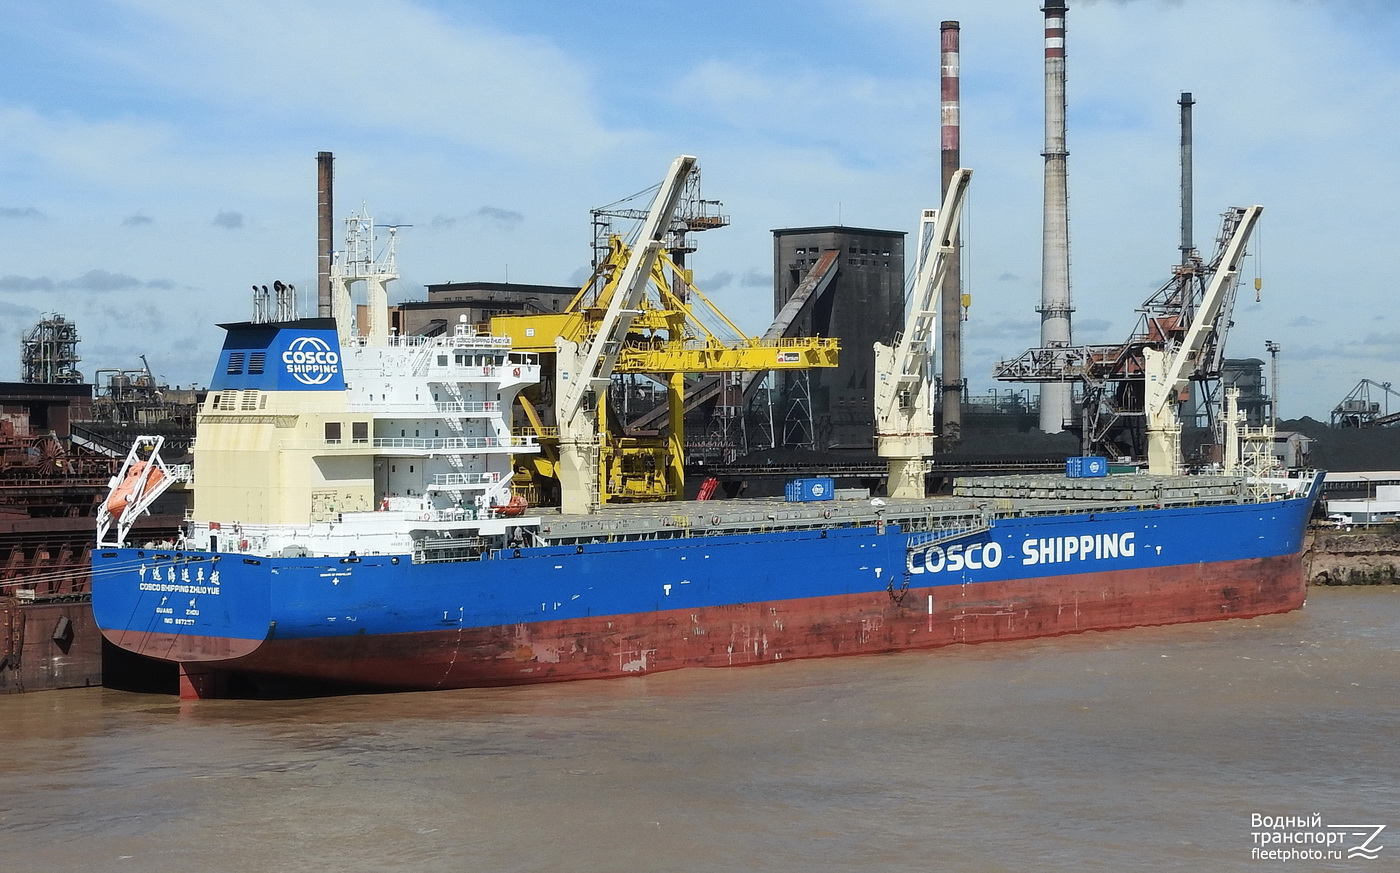 COSCO Shipping Zhuo Yue